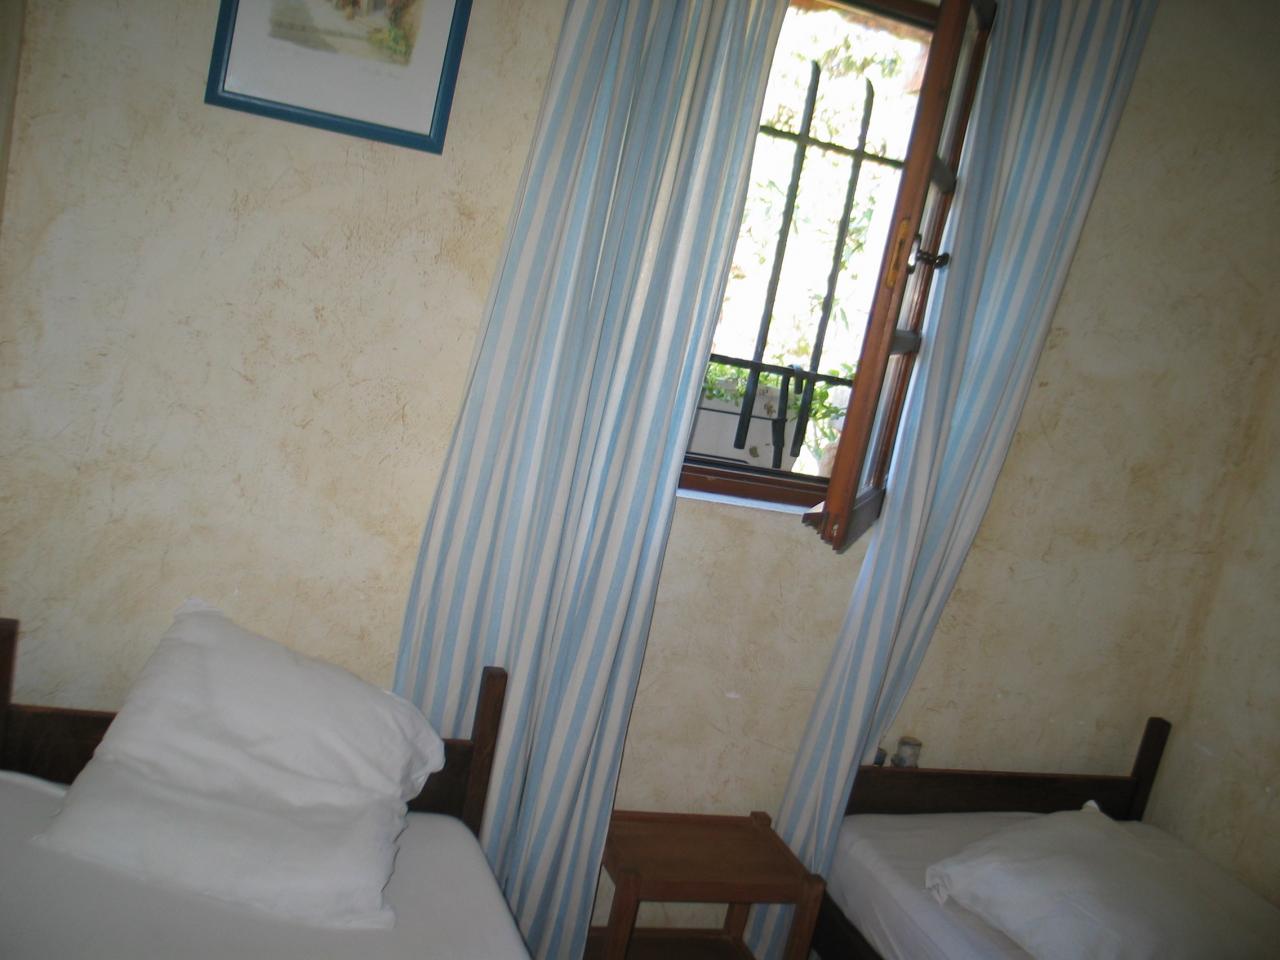 The west-bedroom